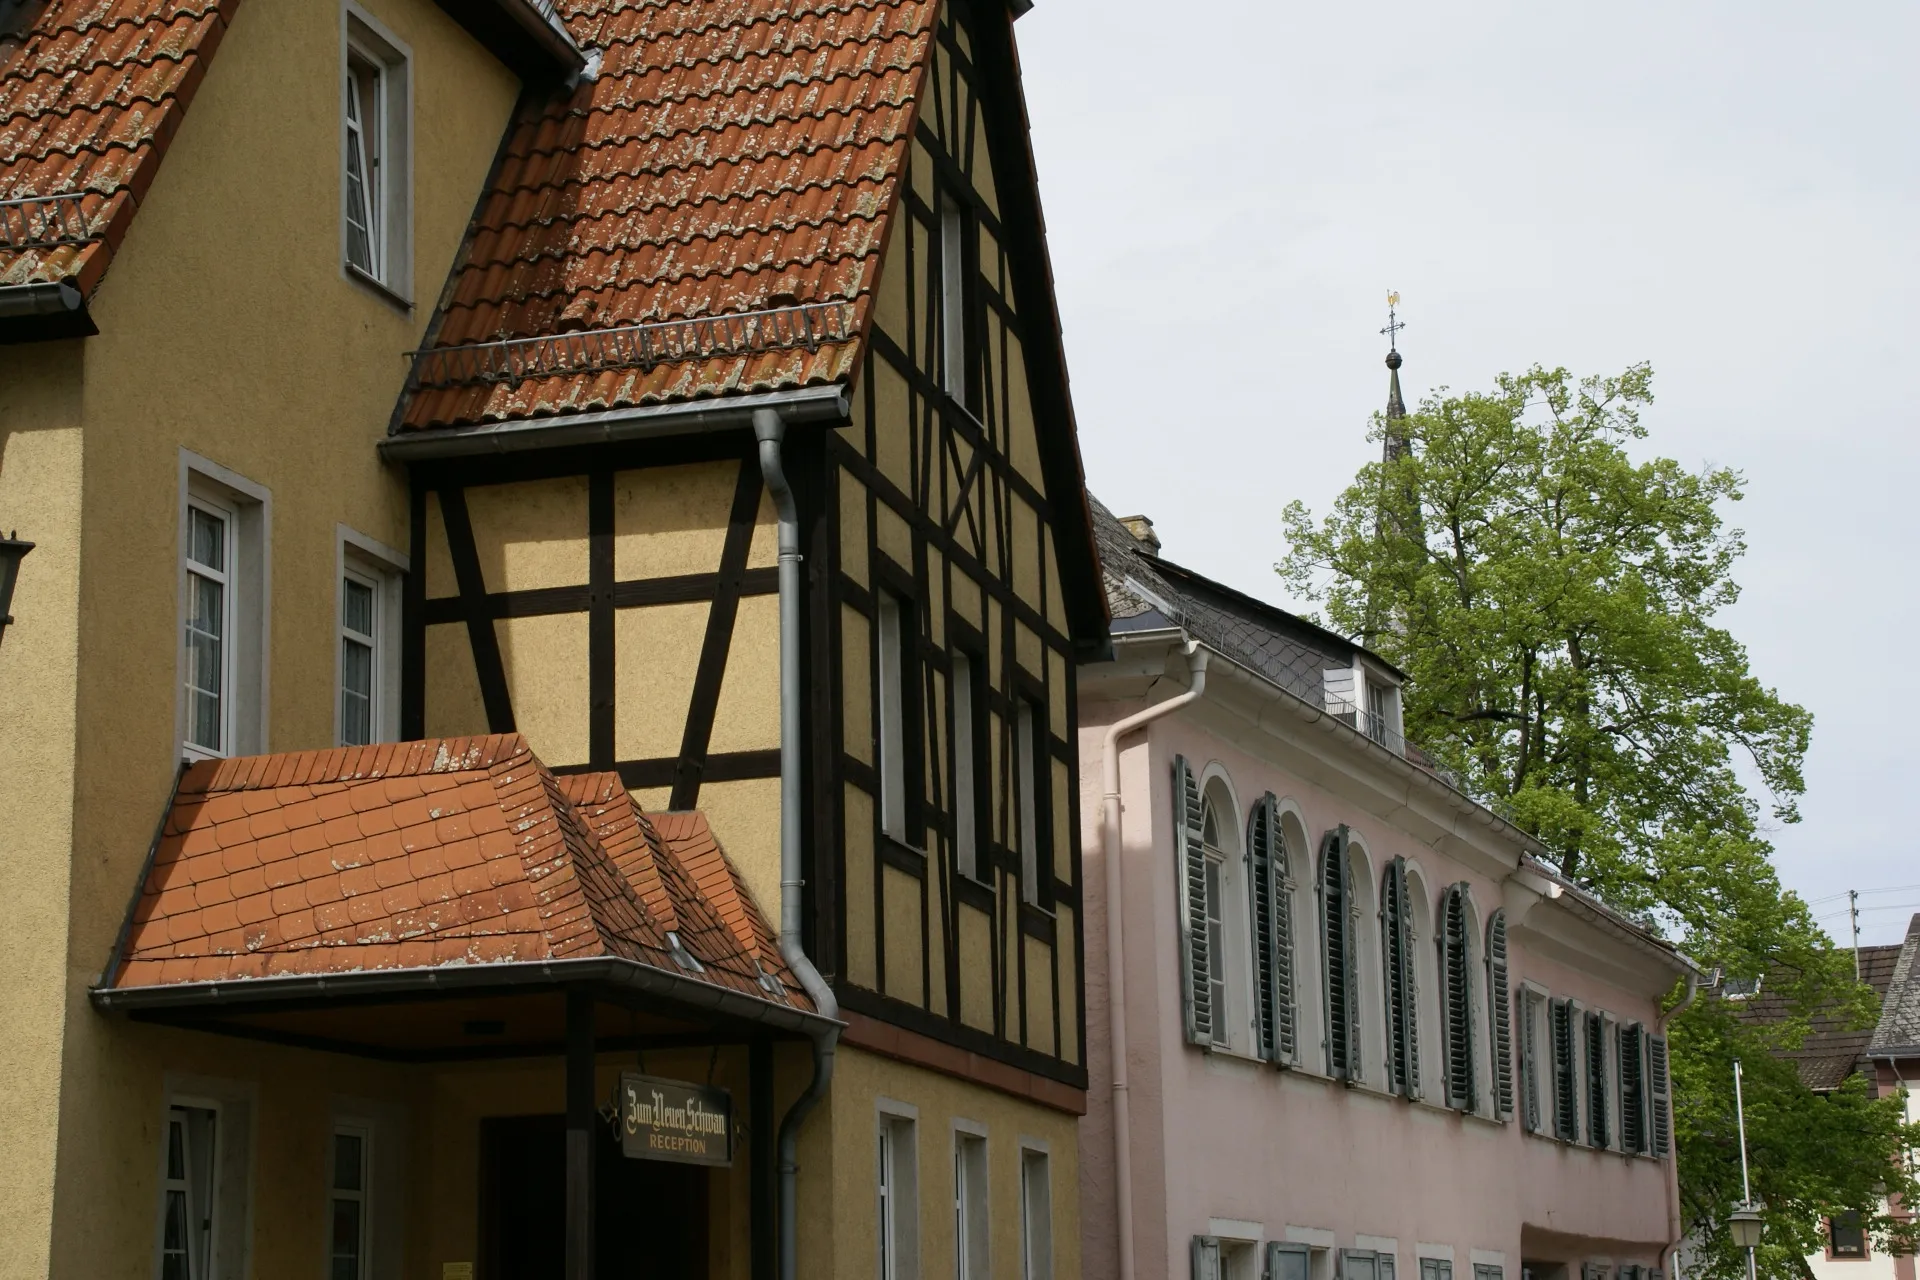 Photo showing: Rheinstraße (Rhine Street) in Walluf near Wiesbaden, Germany